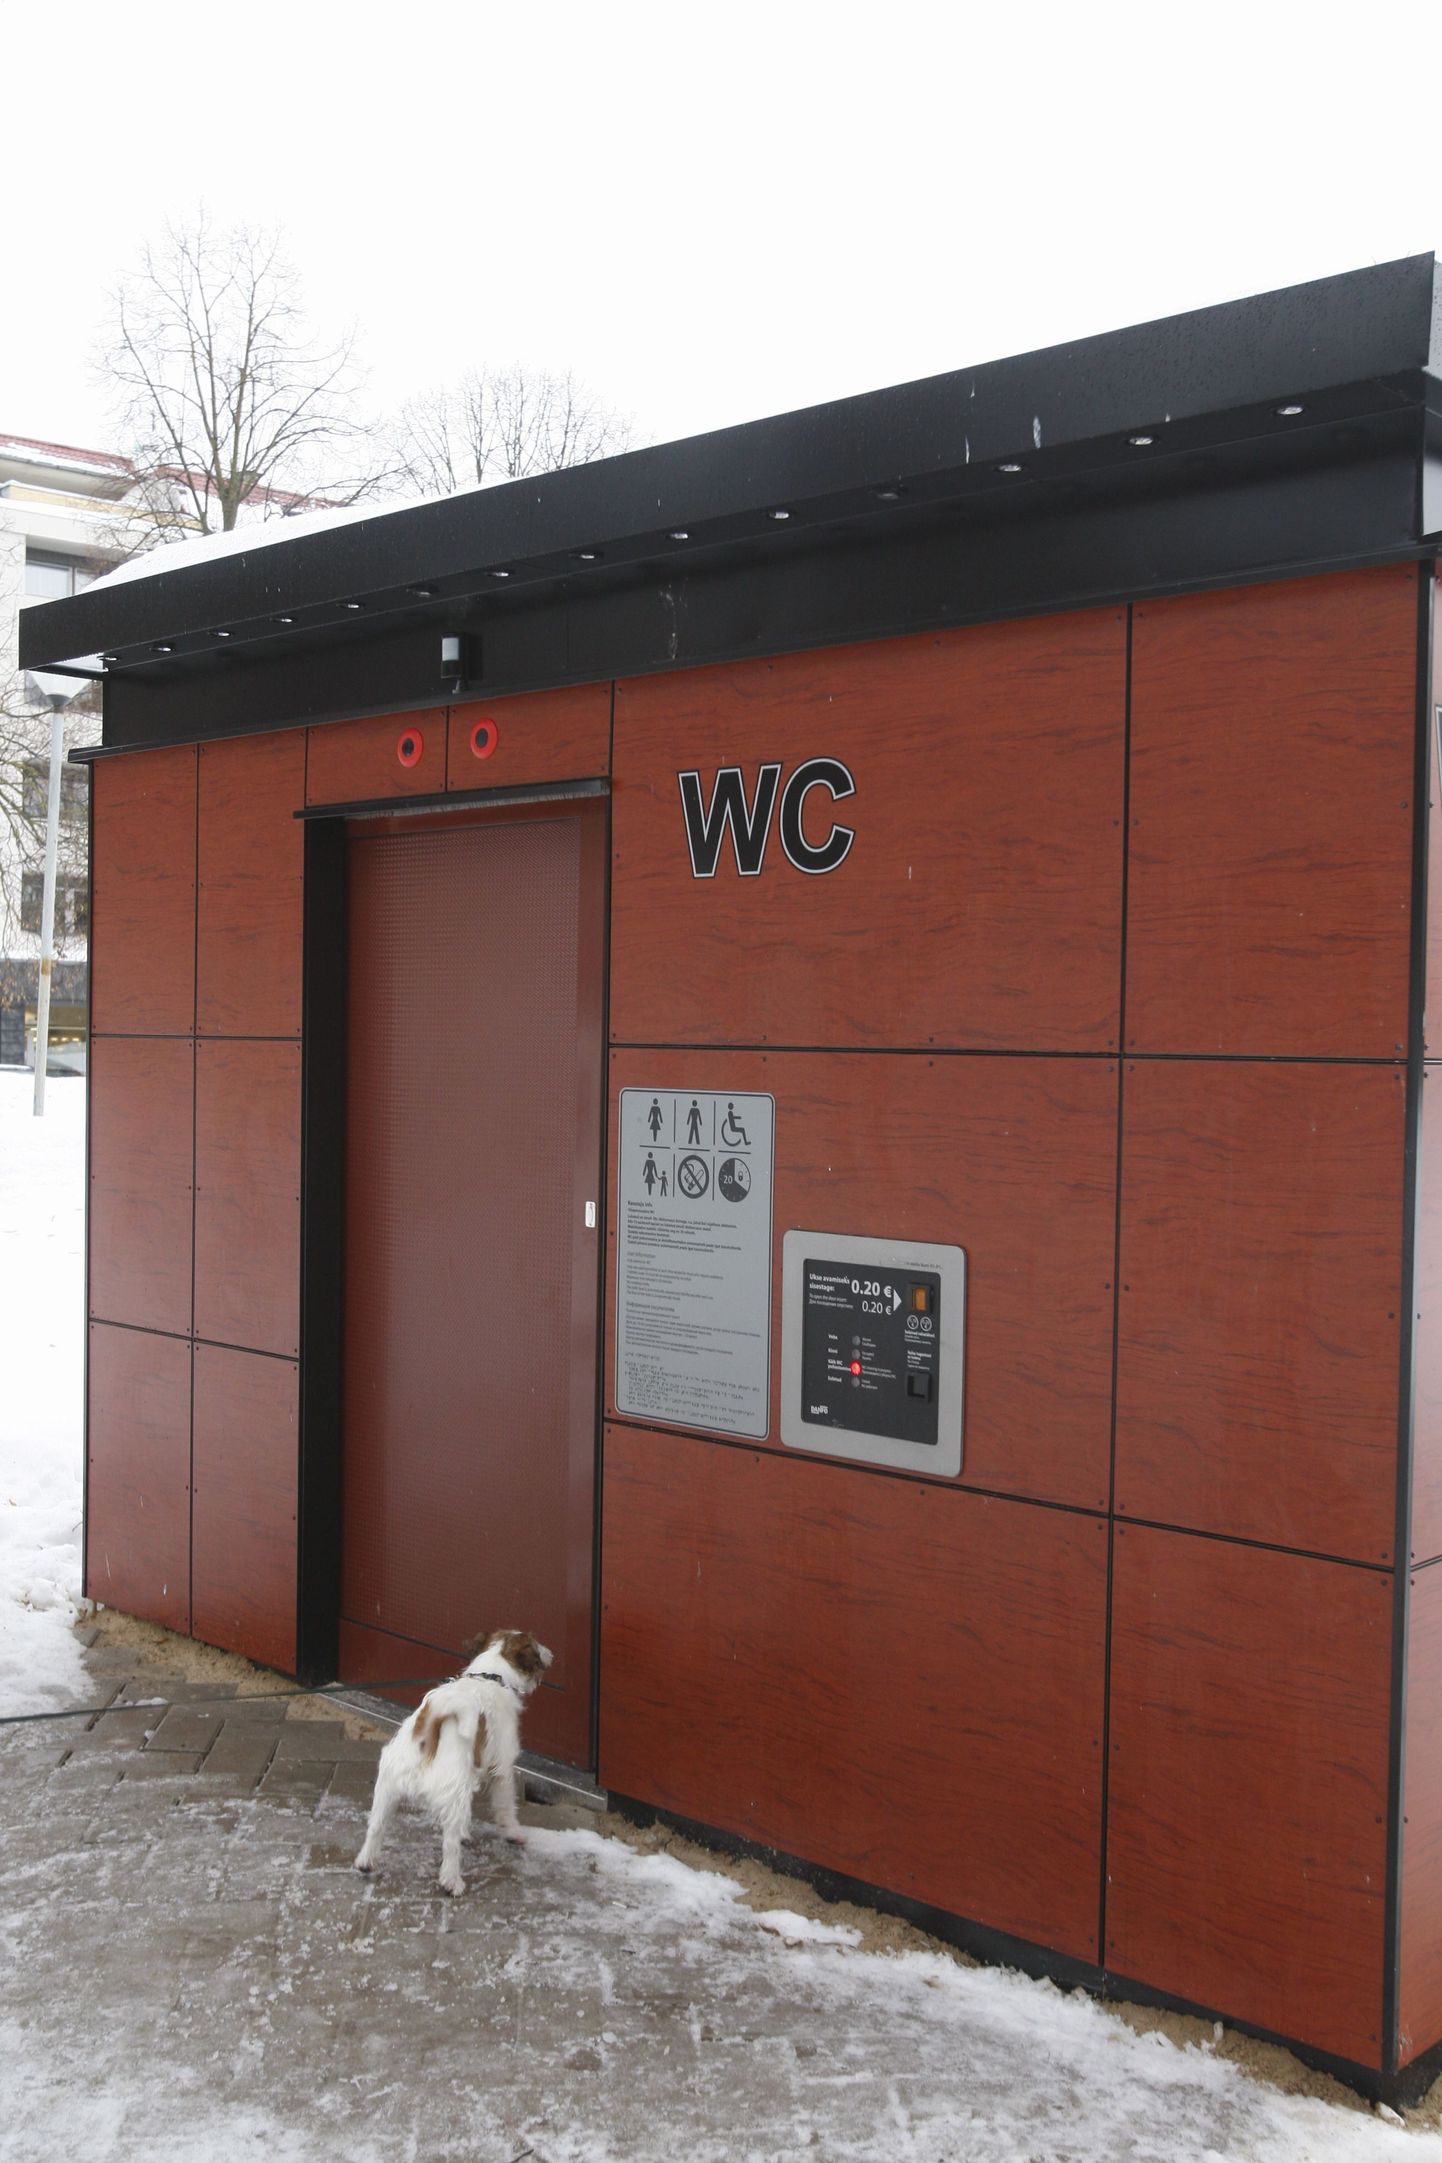 Avalik WC Tartus Küüni tänaval, kust leiti tõenäoliselt peksmise ohvriks langenud mees.